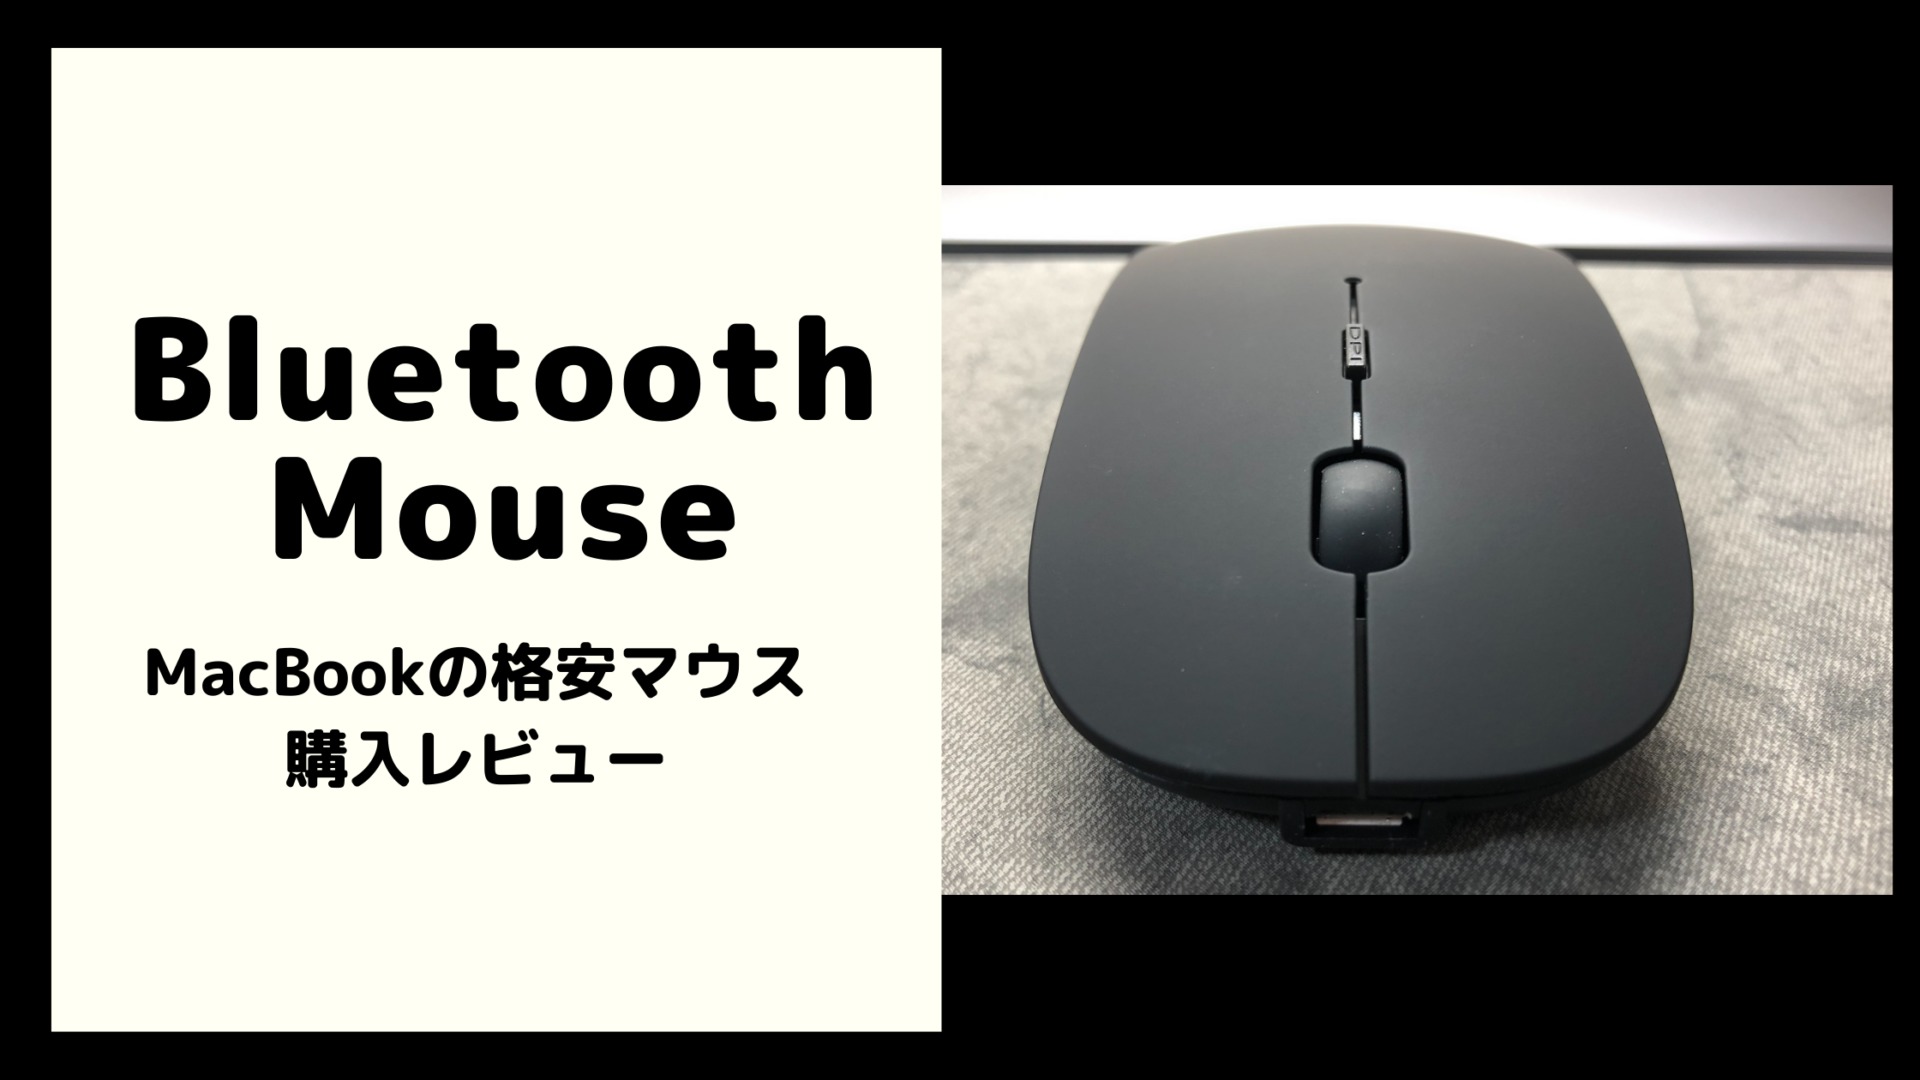 Macbook用bluetoothマウスレビュー マジックマウスの代替え品に購入 ぱぱろぐ